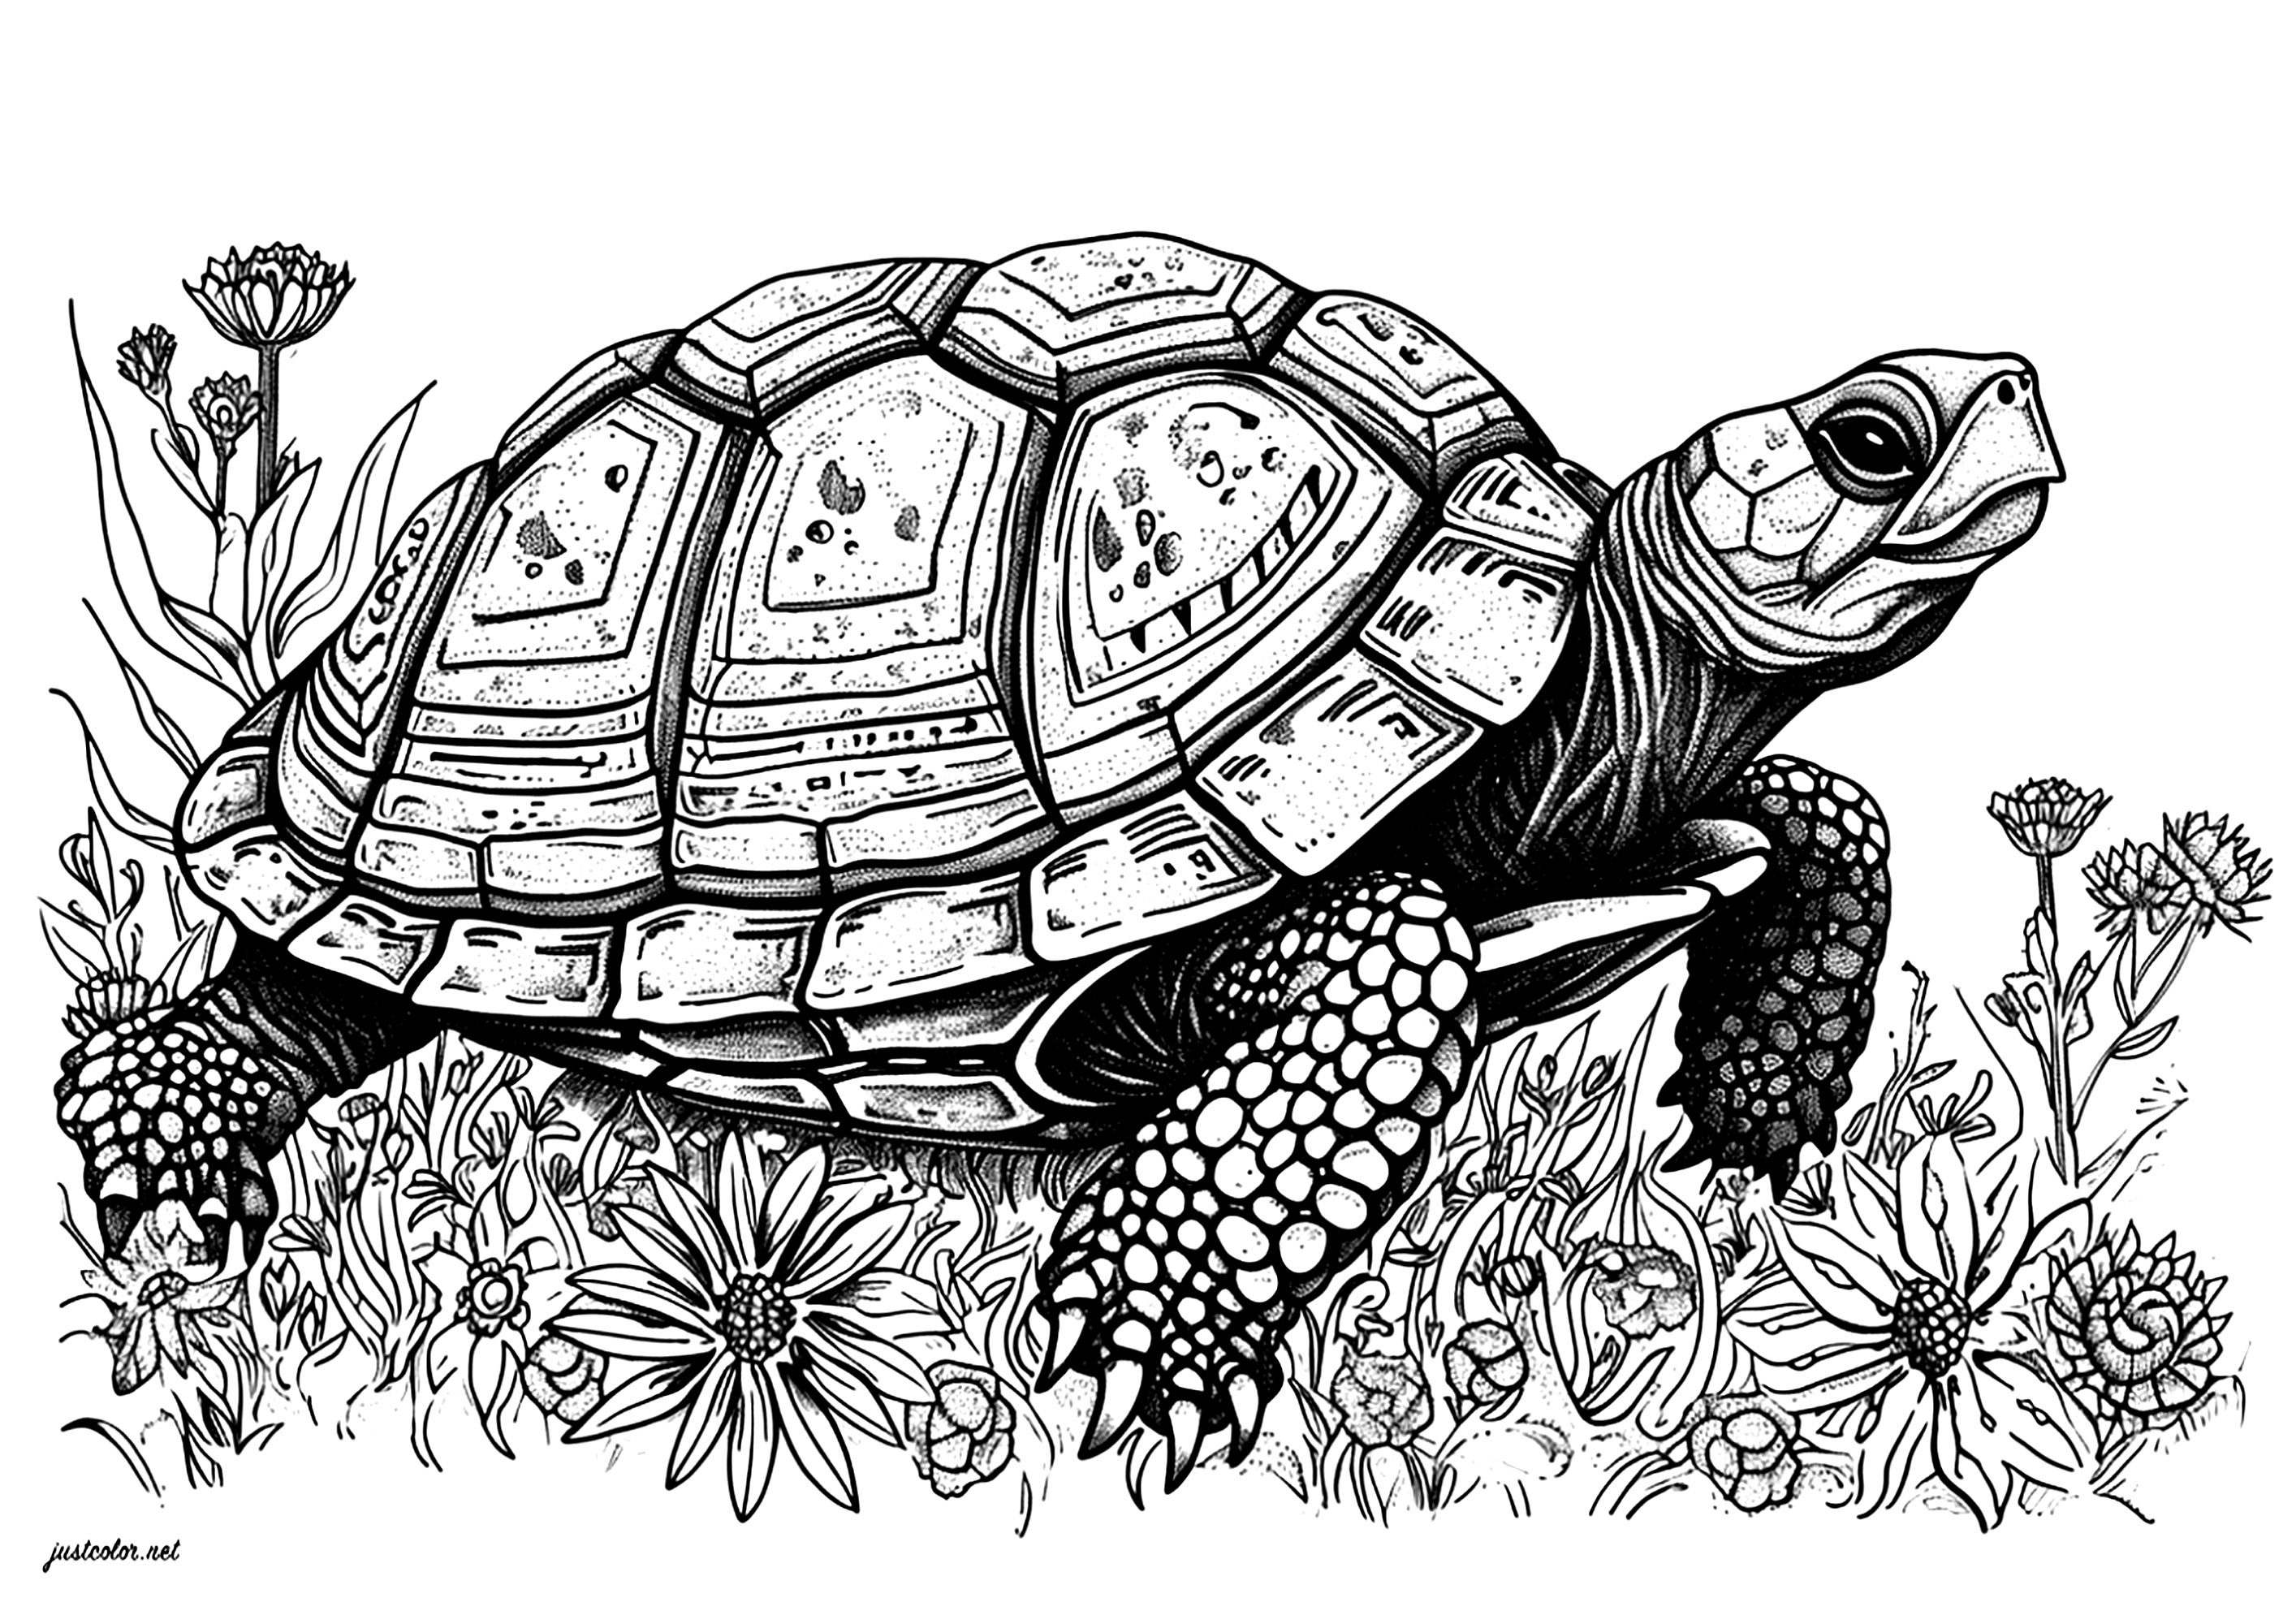 Una bella tartaruga che si muove lentamente tra i fiori